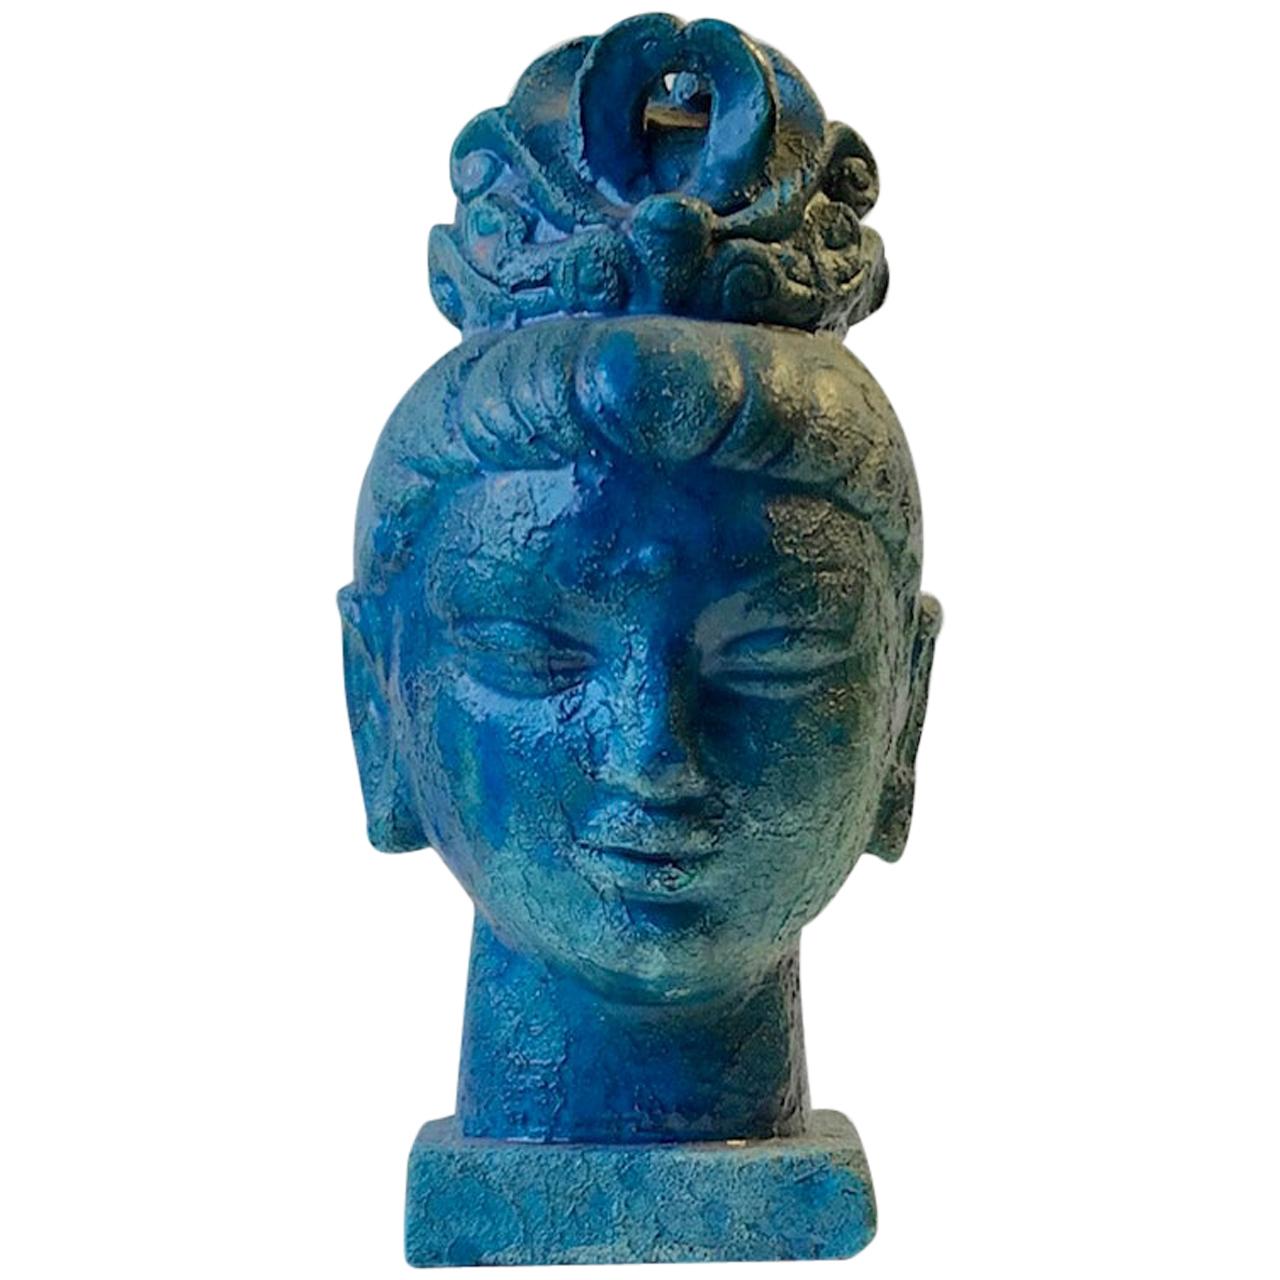 Buddha-Büste des Guanyins von Aldo Londi in blauer Cinese-Glasur, Bitossi, 1960er Jahre